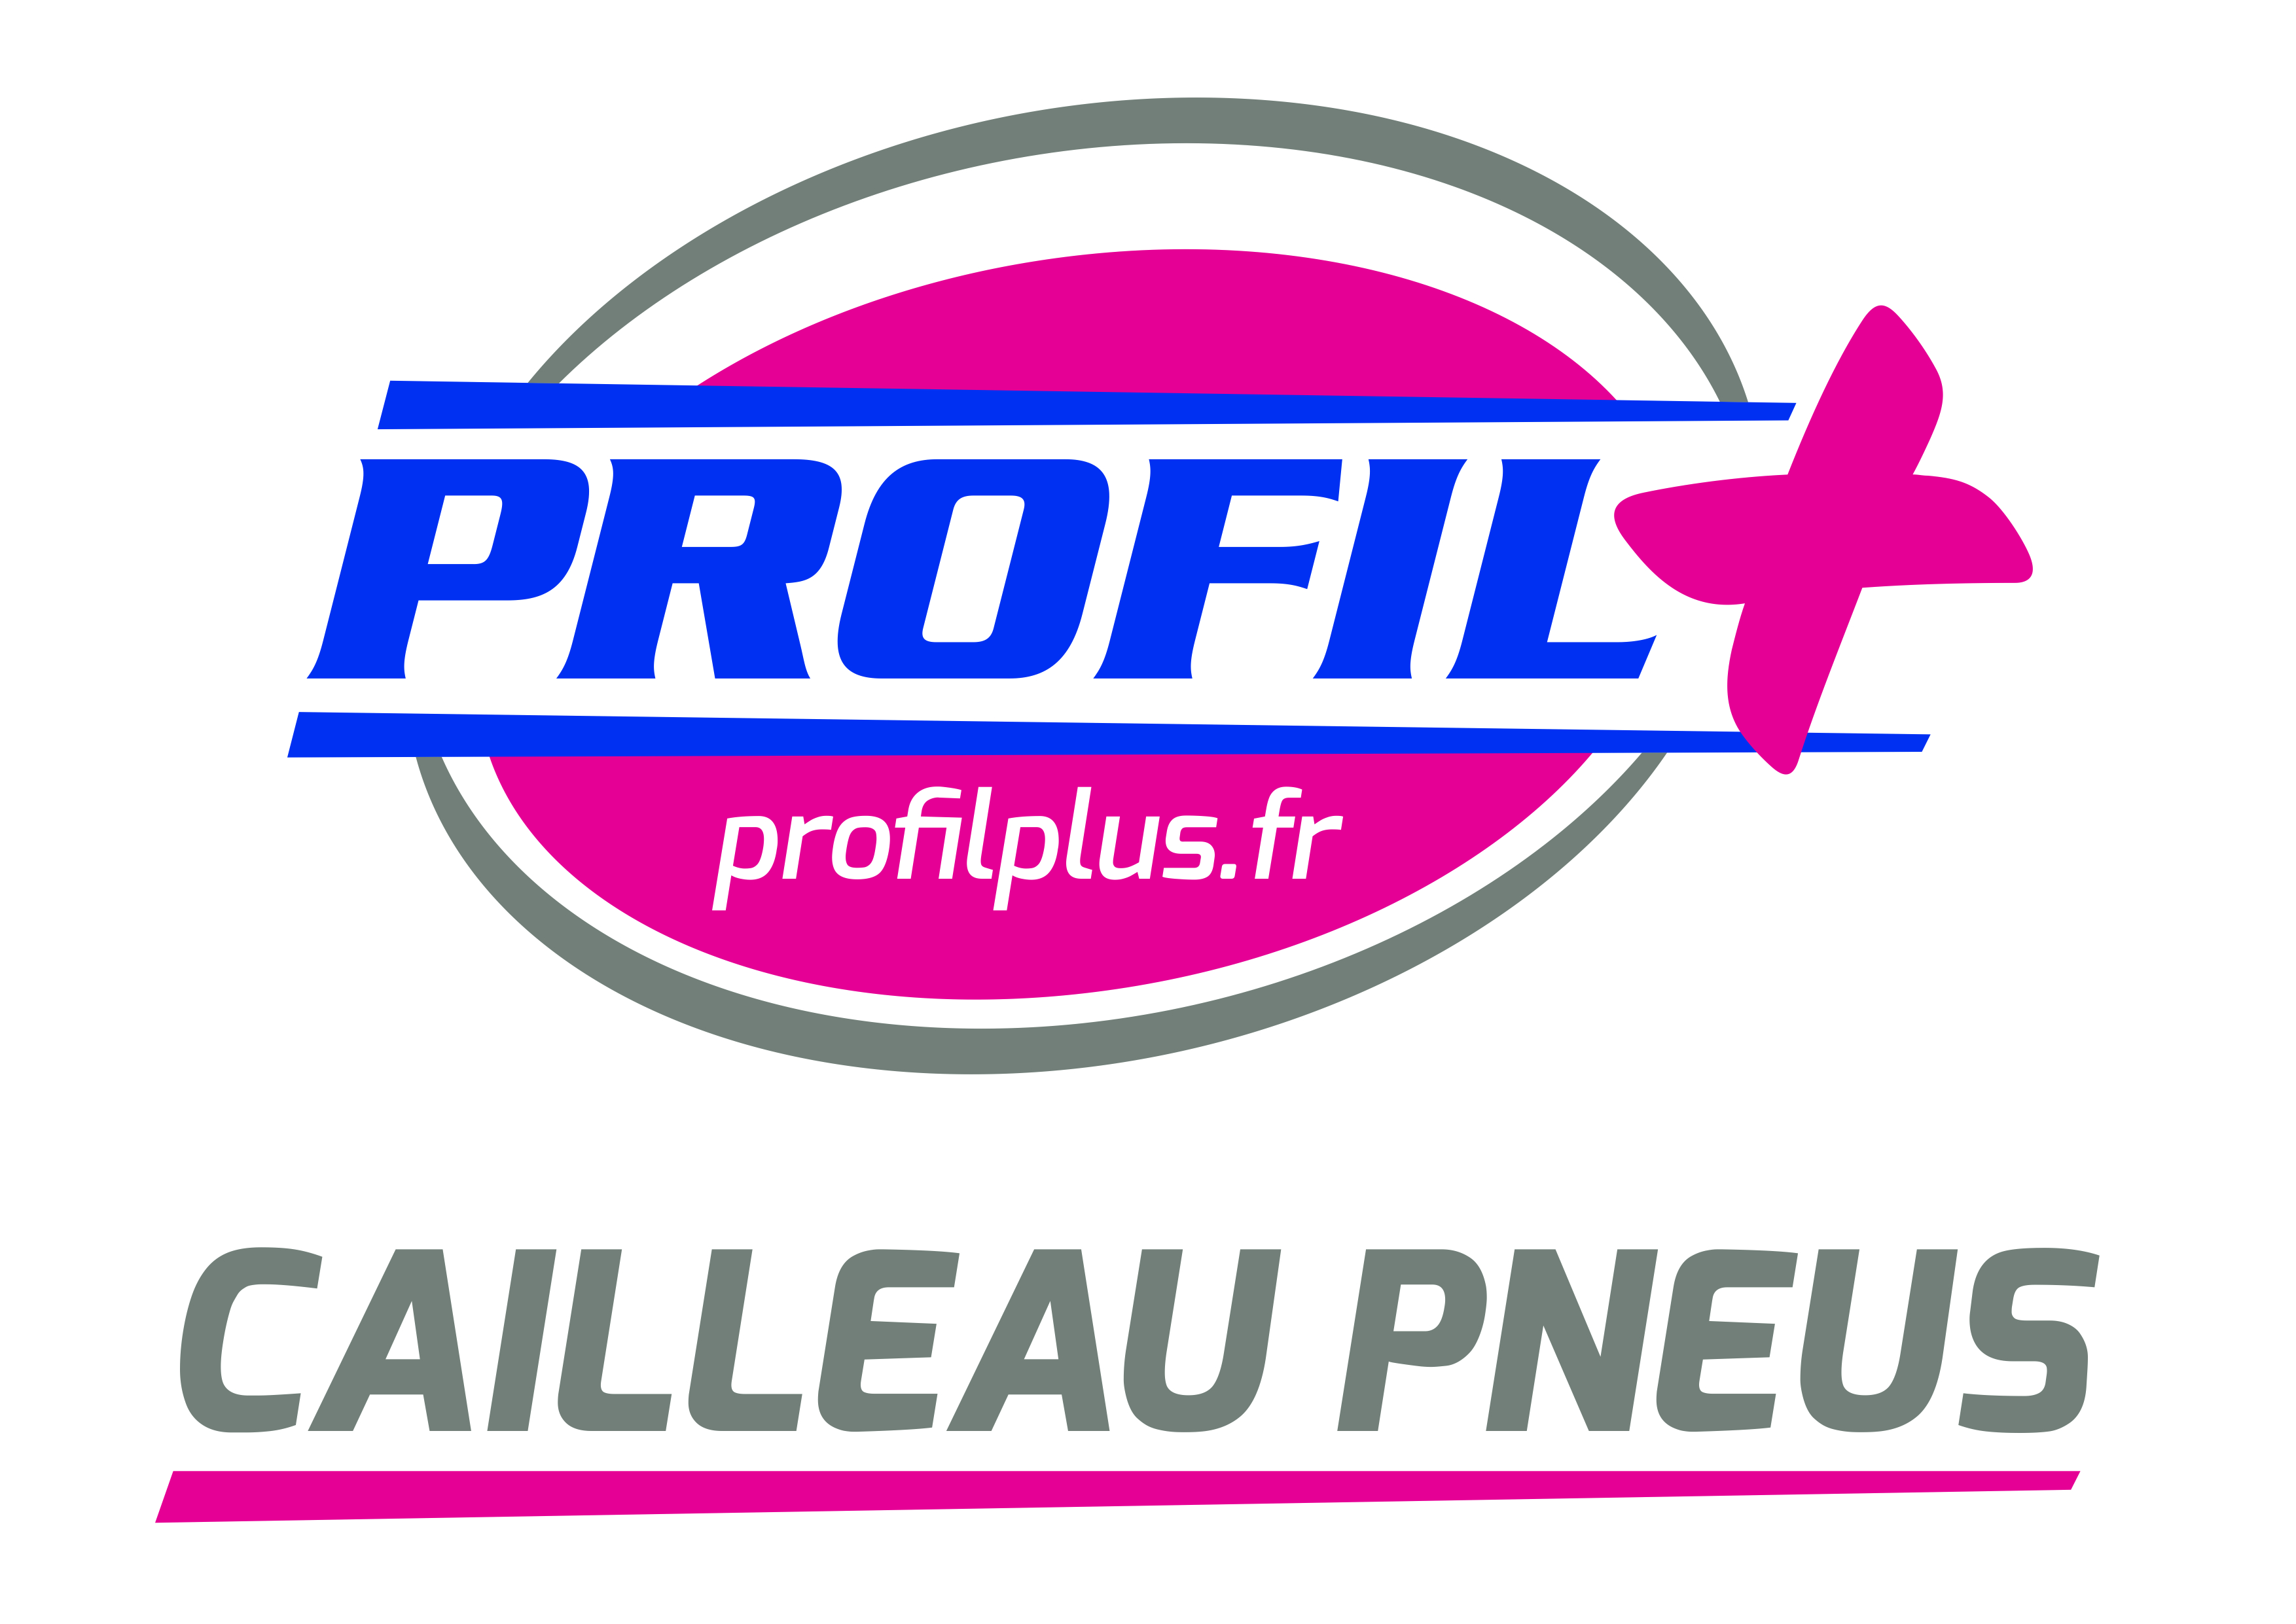 CAILLEAU PNEUS - PROFIL +